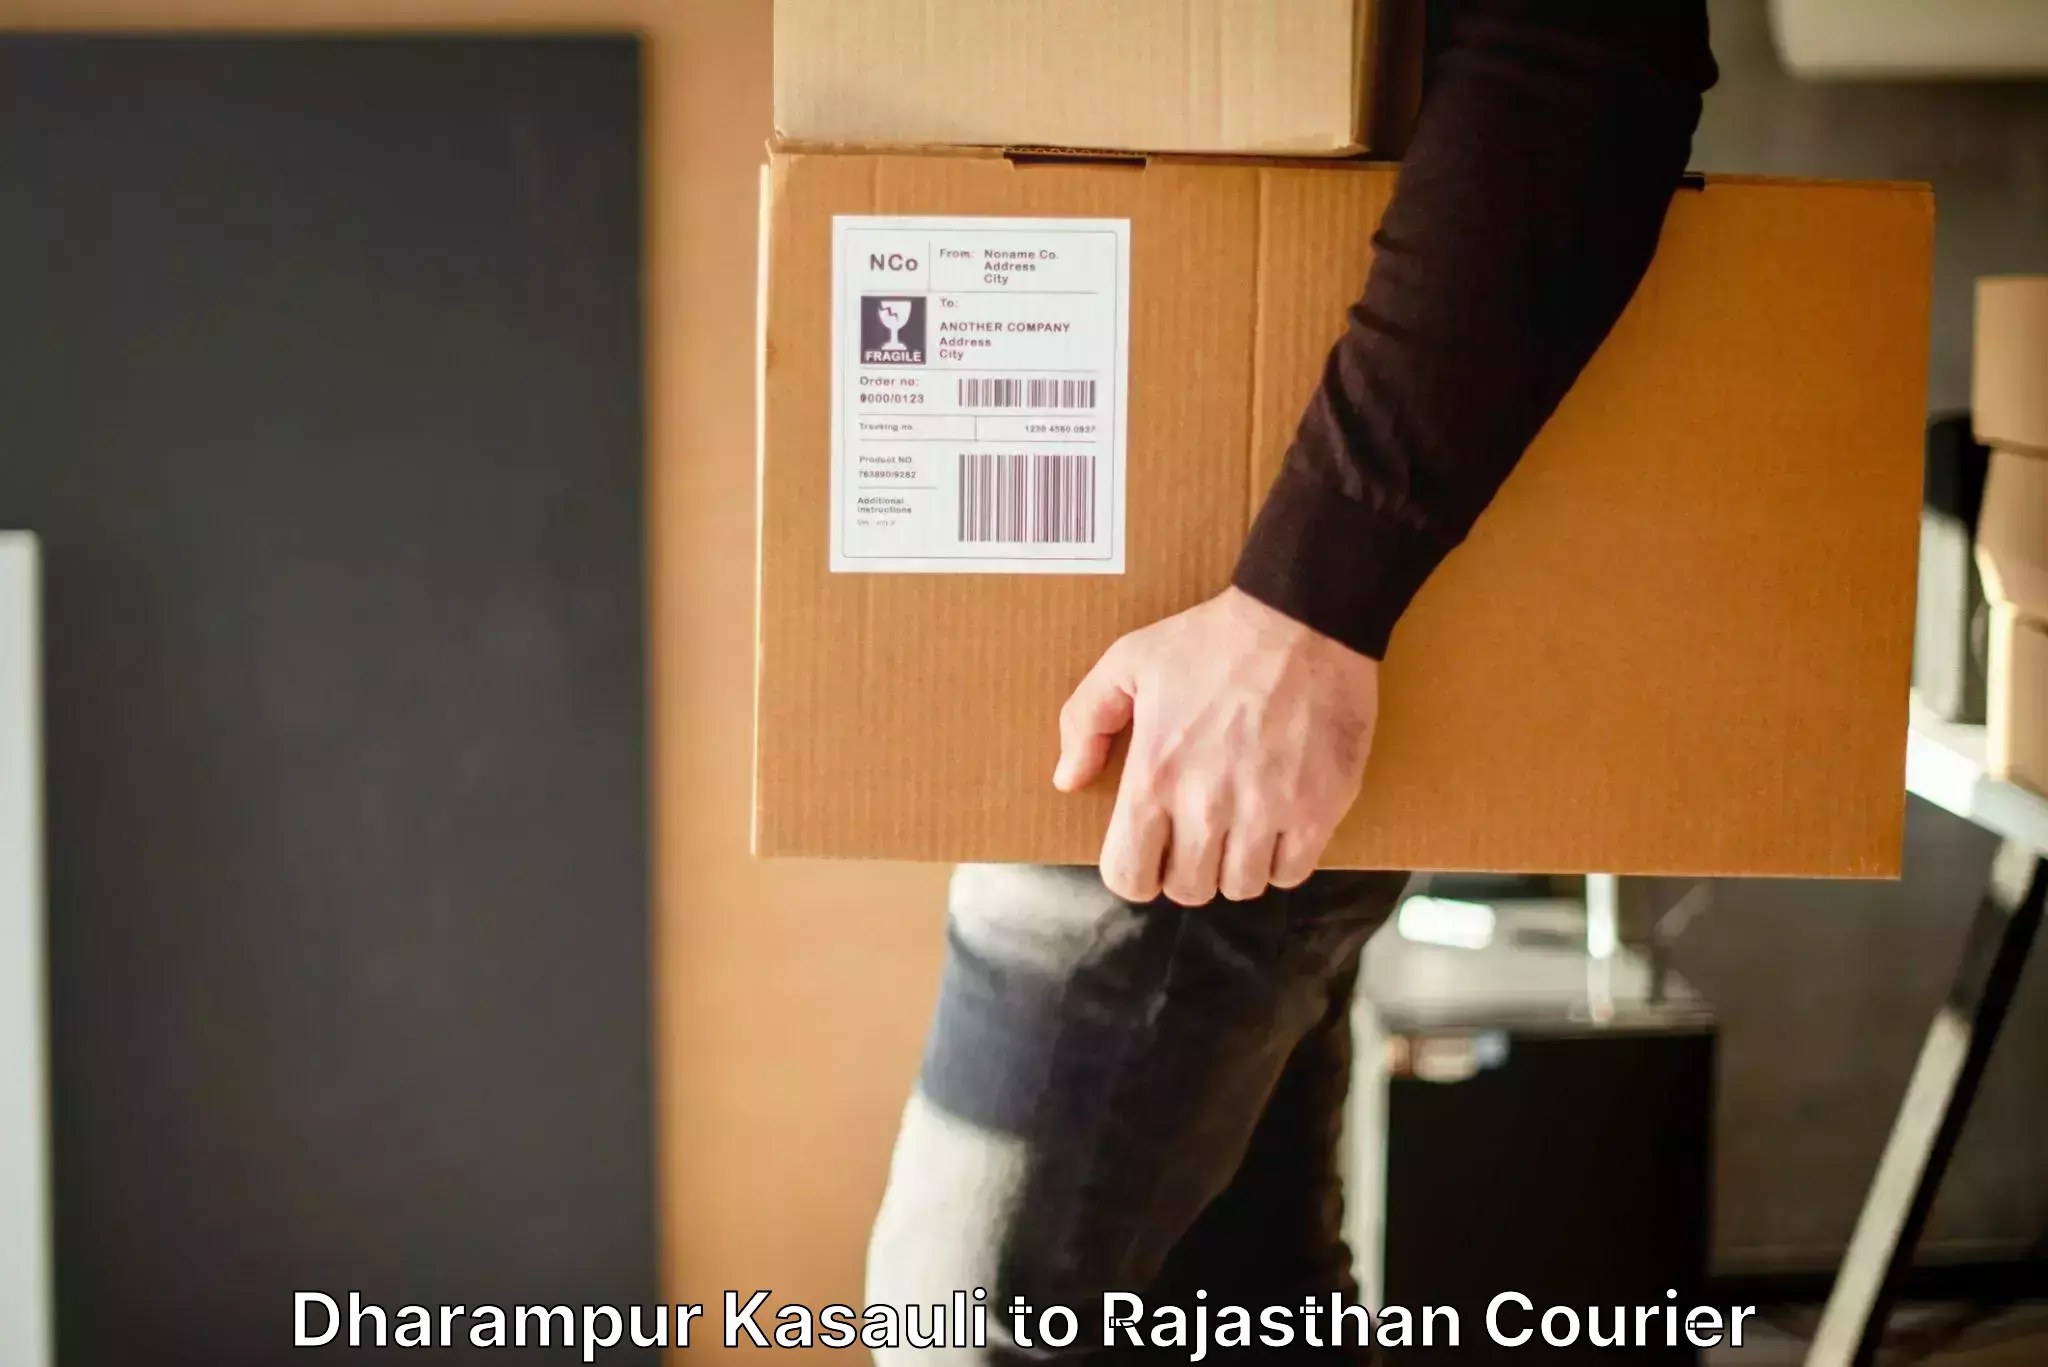 Baggage transport technology in Dharampur Kasauli to Rajasthan